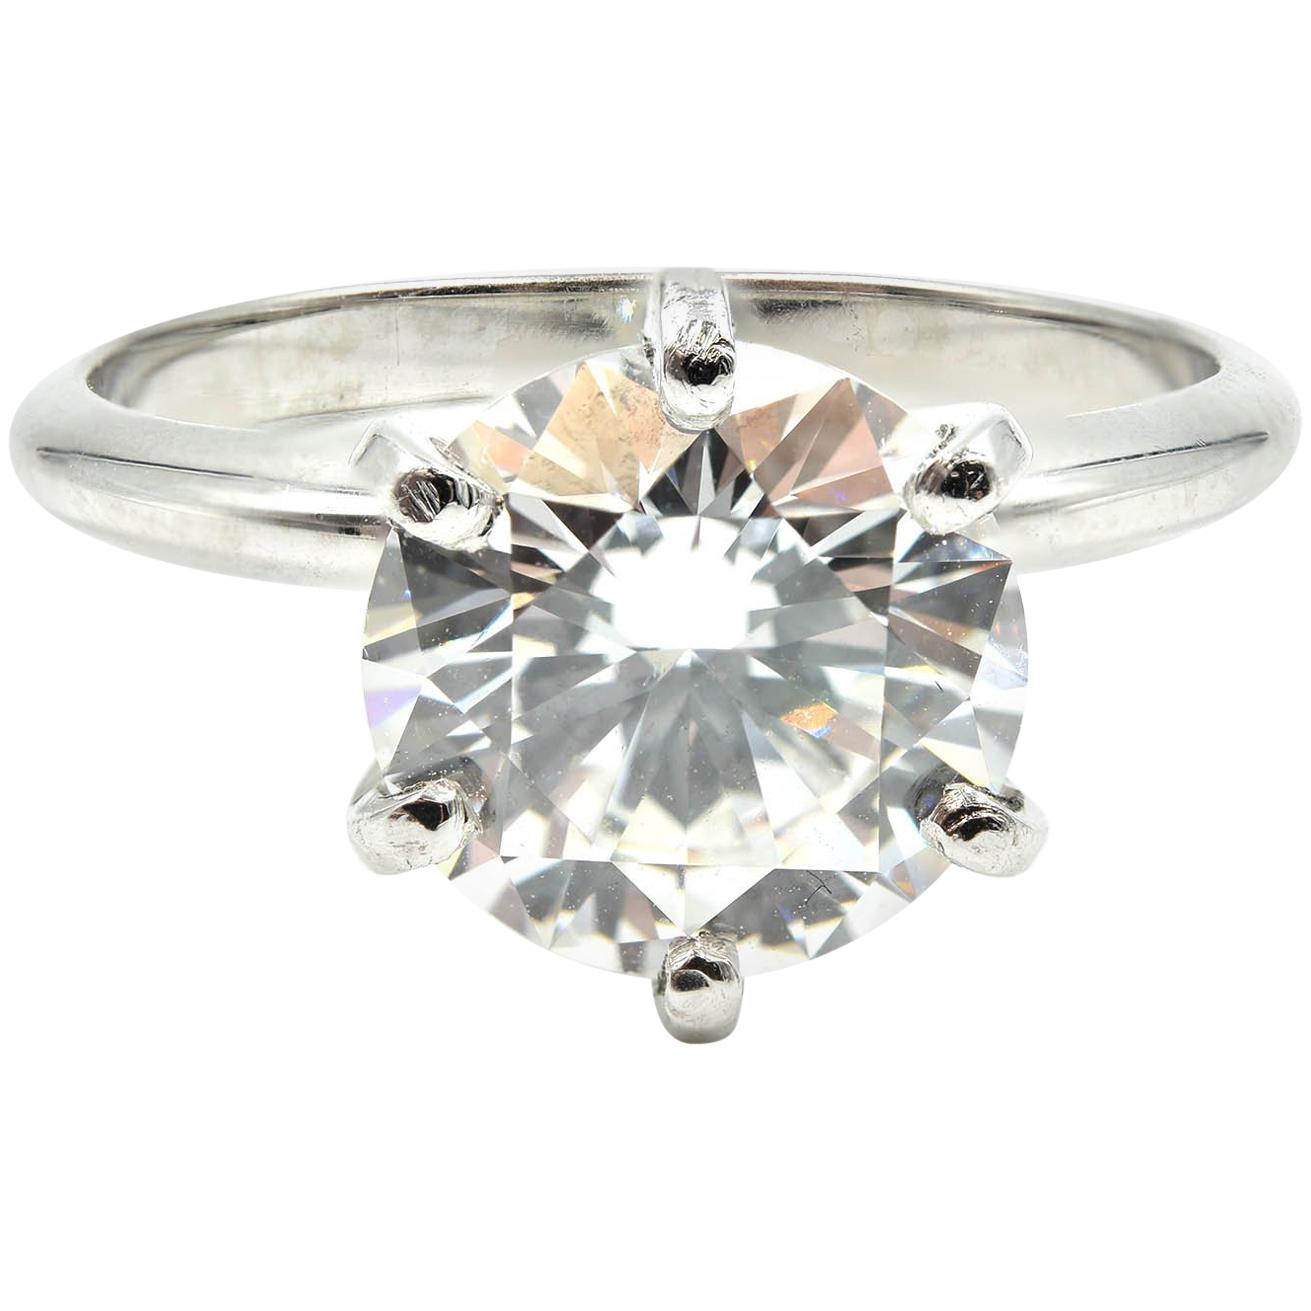 2.36 Carat Round Brilliant Cut GIA Diamond Solitaire Platinum Engagement Ring